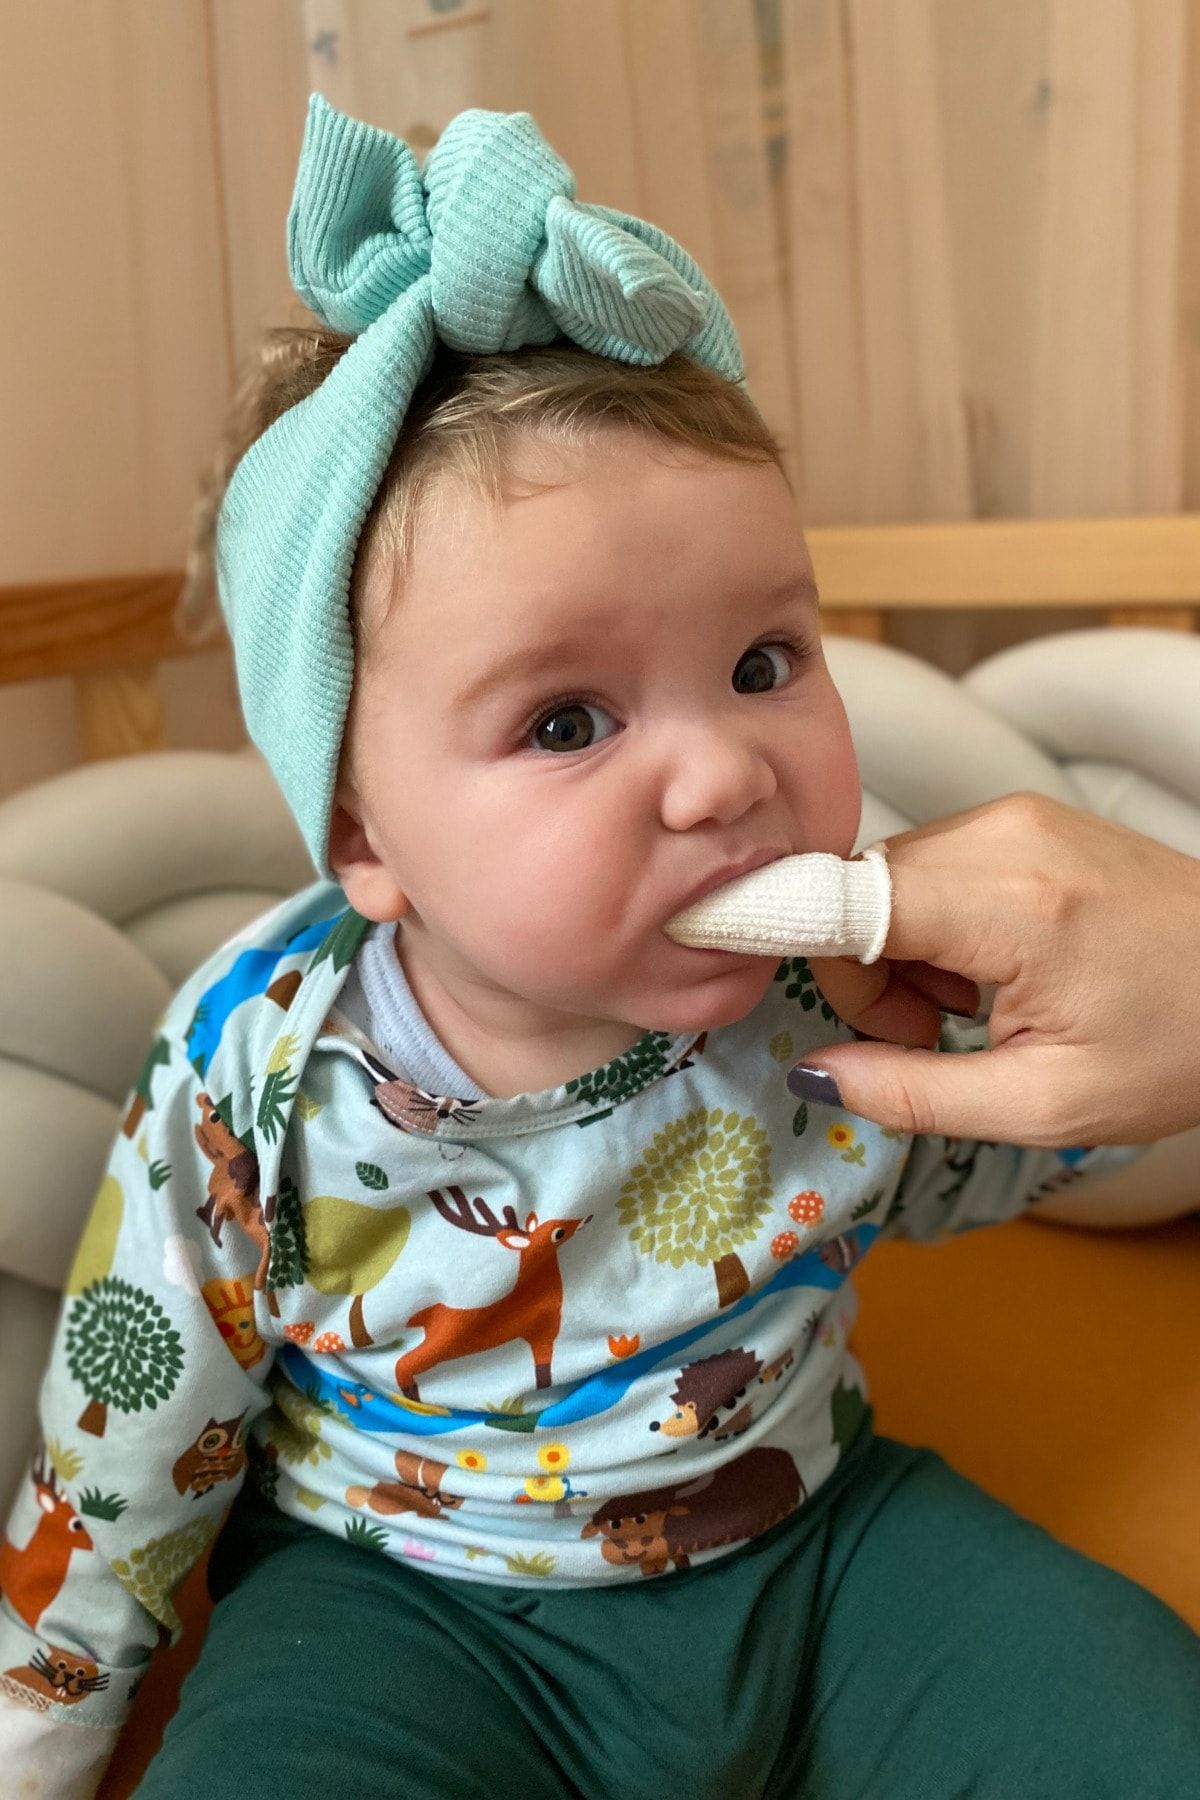 SilverMef Bebek Ağız Bakım Parmaklığı - Gümüş Iyonlu Pamukçuk Önleyici Bebek Diş Temizleyici Ve Diş Kaşıyıcı